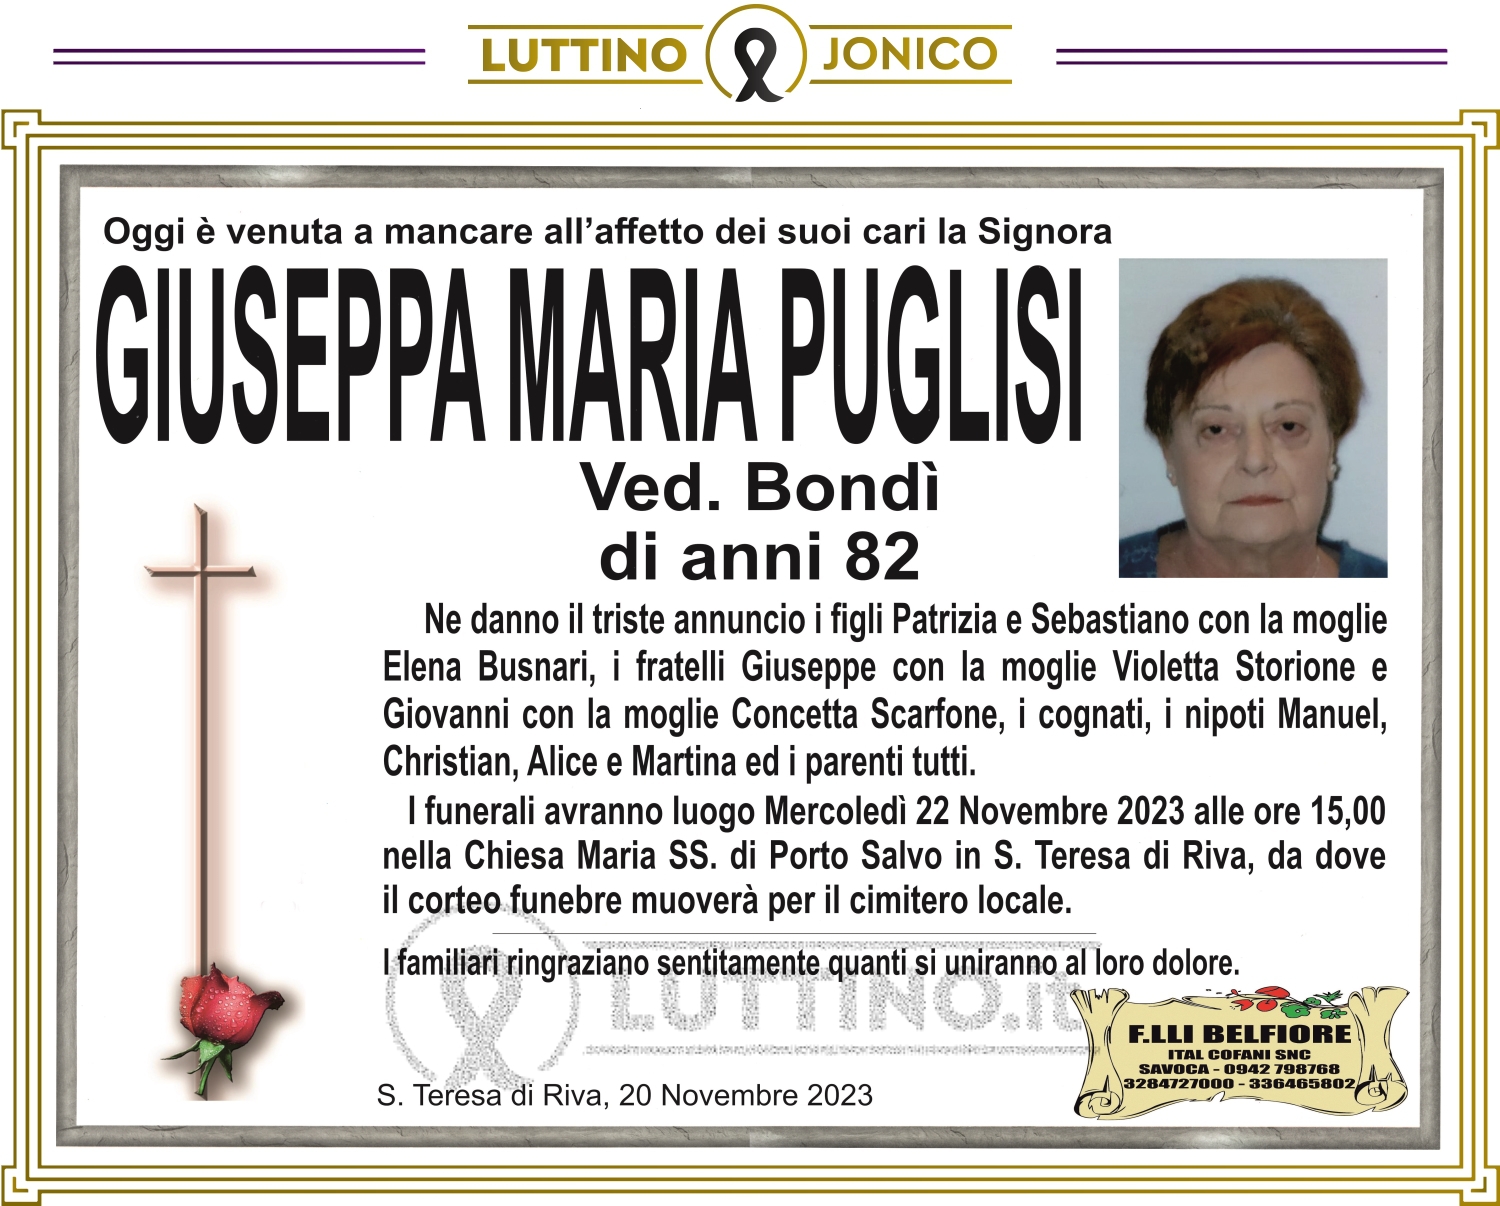 Giuseppa Maria Puglisi